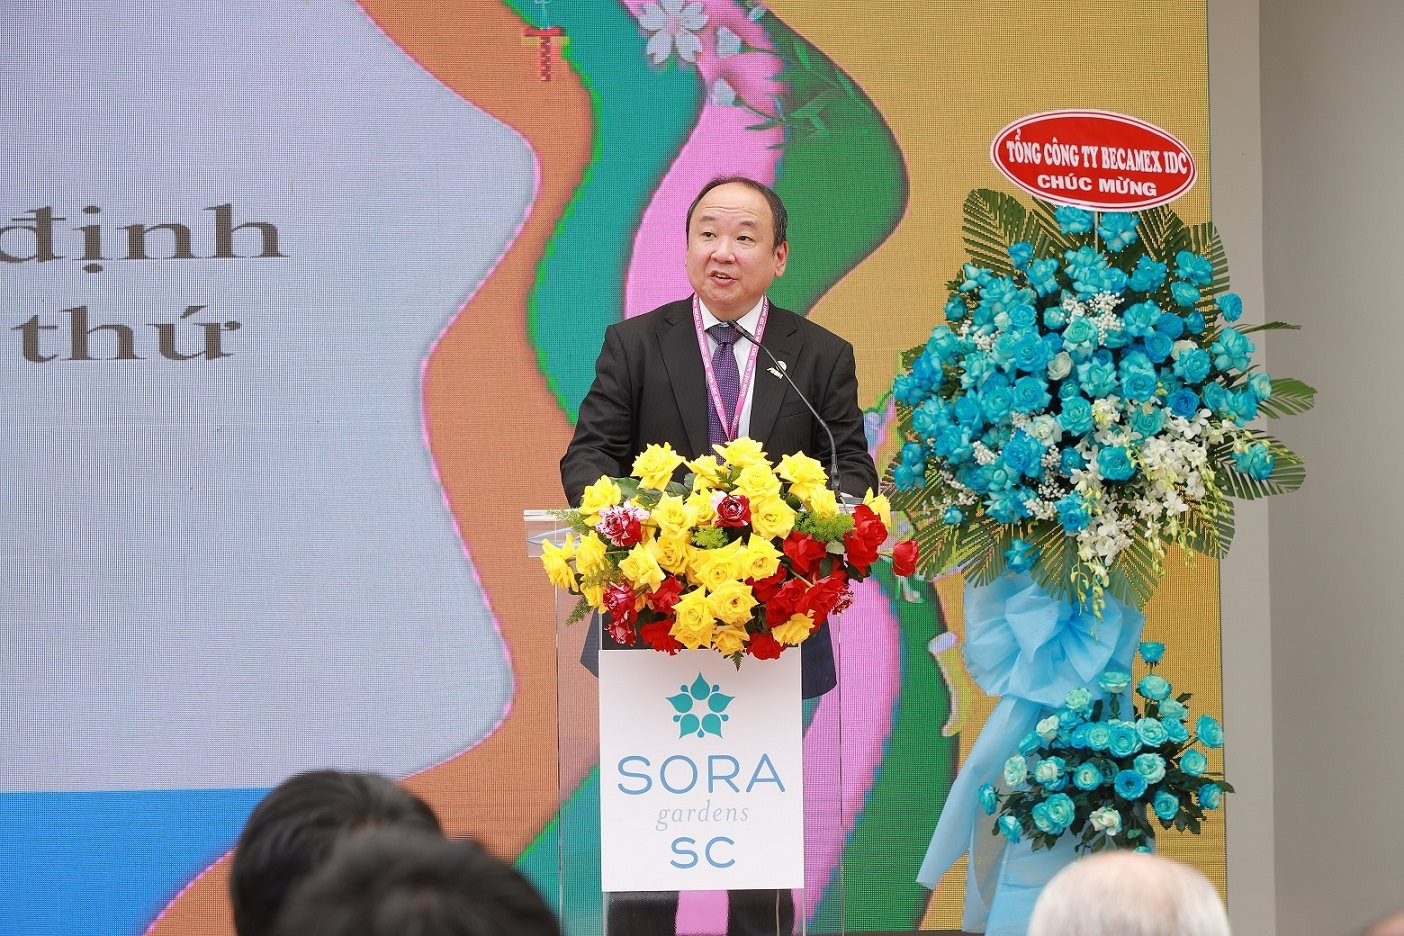 “Cơn sốt” siêu thị, đại siêu thị tại Việt Nam: AEON khai trương siêu thị 5.000m2 tại SORA Gardens SC, Lotte “nhá hàng” tổ hợp lớn chưa từng có và Vincom, Thaco… cũng nhập cuộc - Ảnh 1.